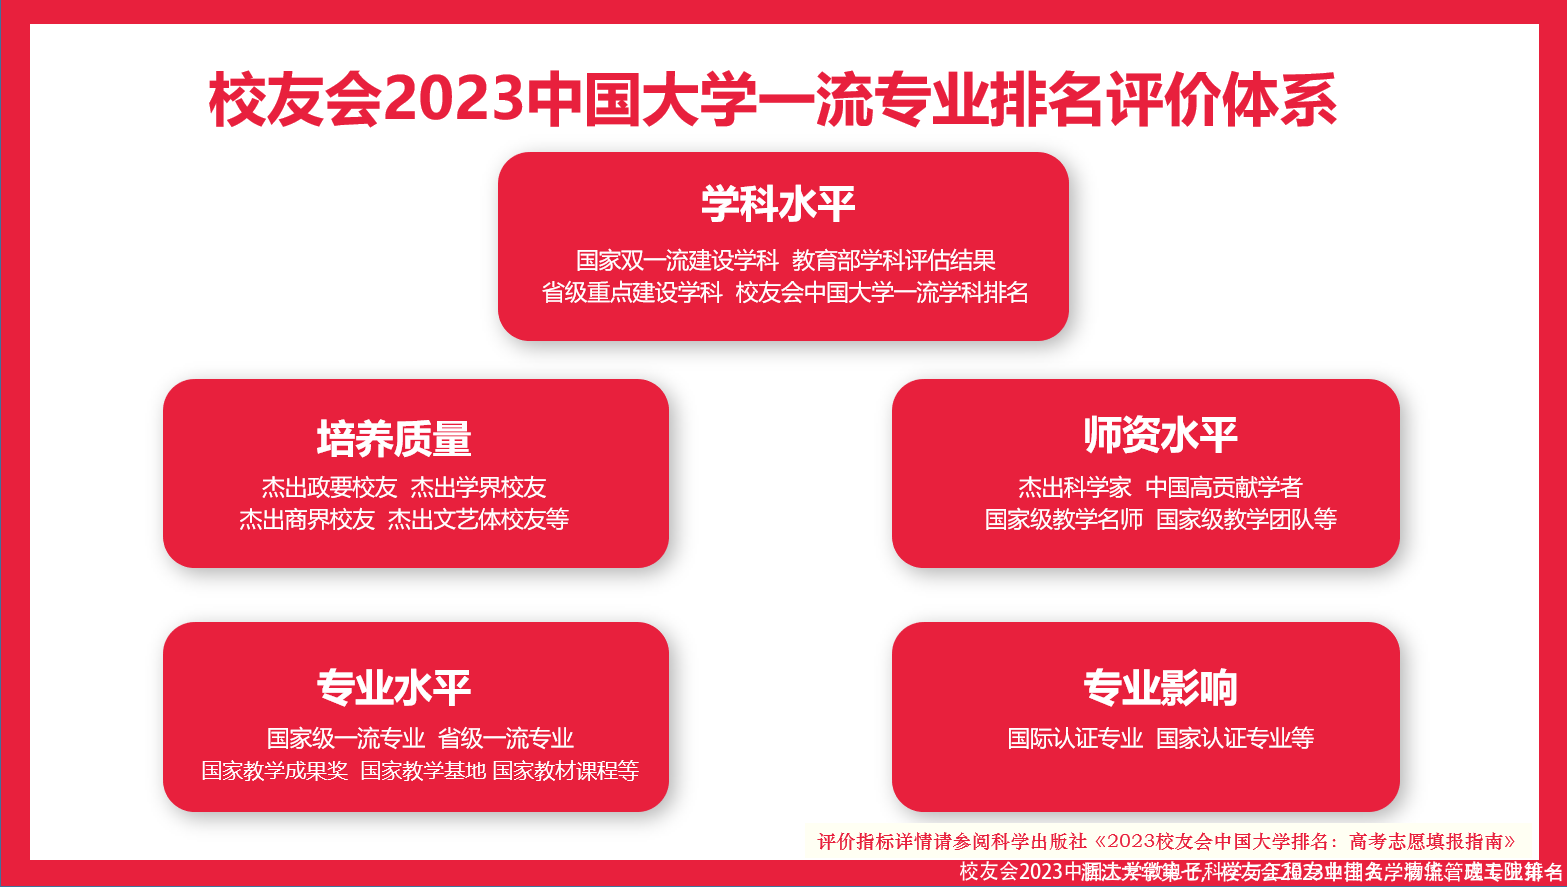 浙江大学第七，校友会2023中国大学物流管理专业排名